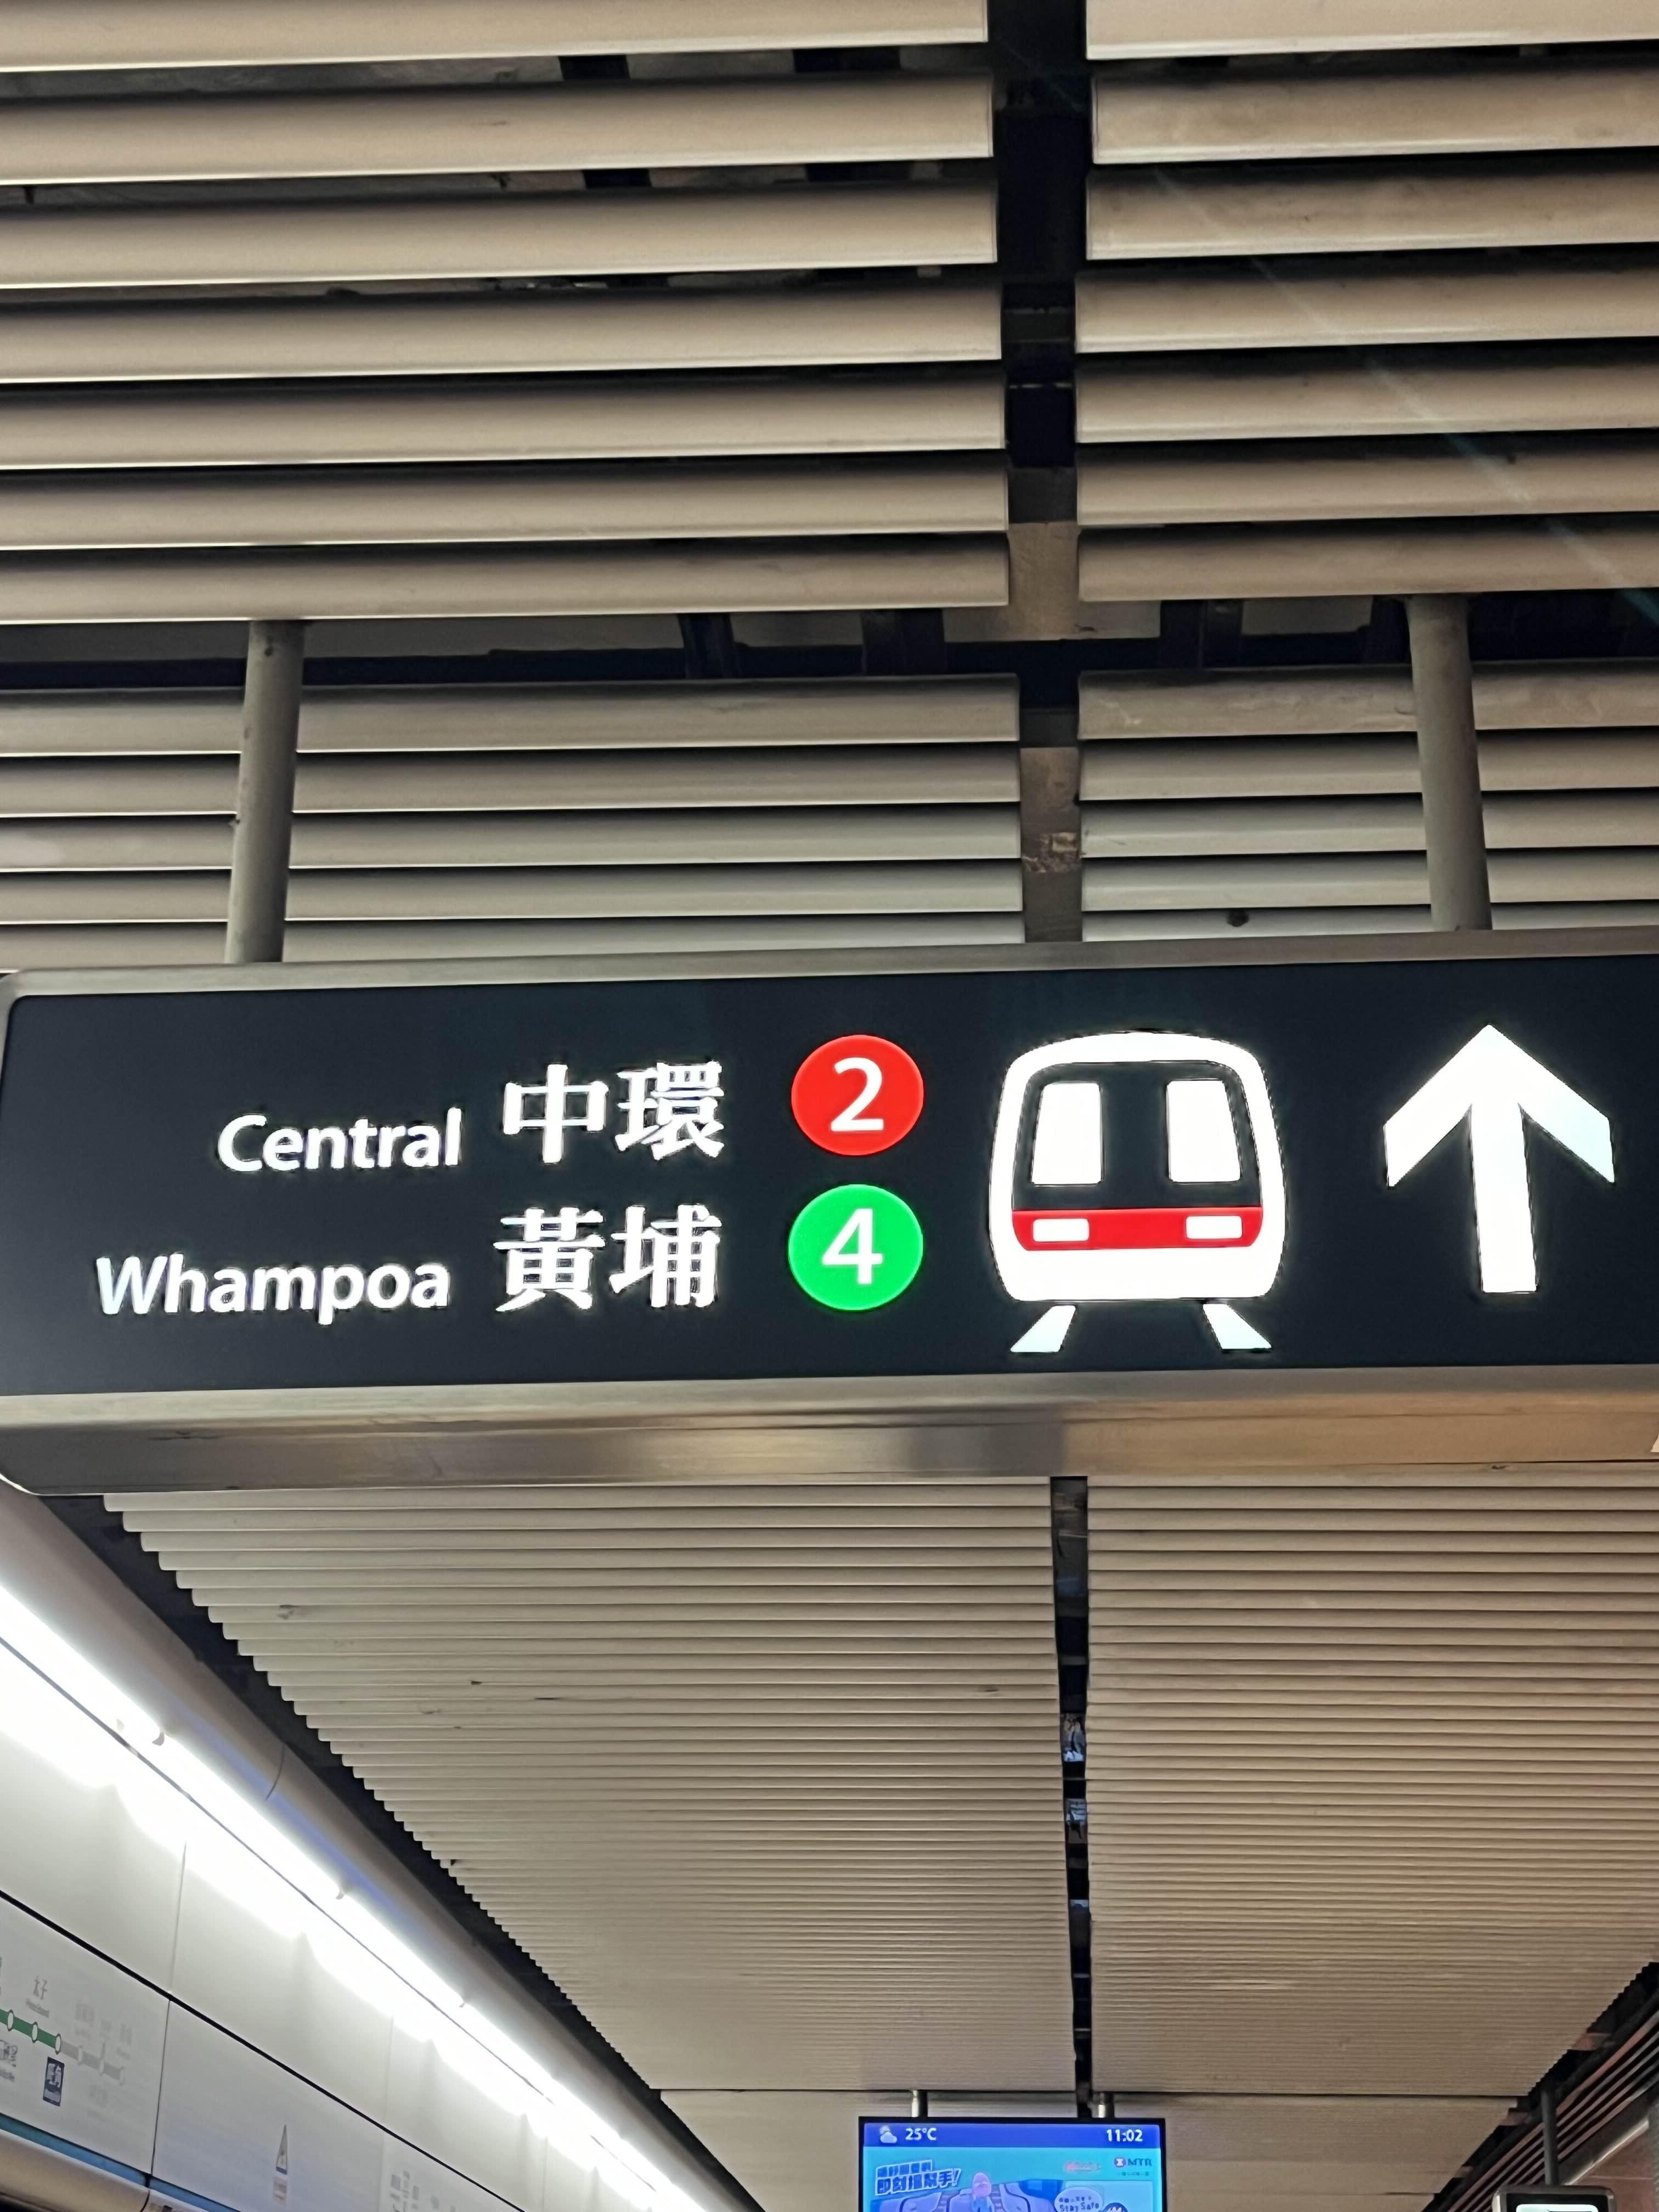 홍콩지하철 표시